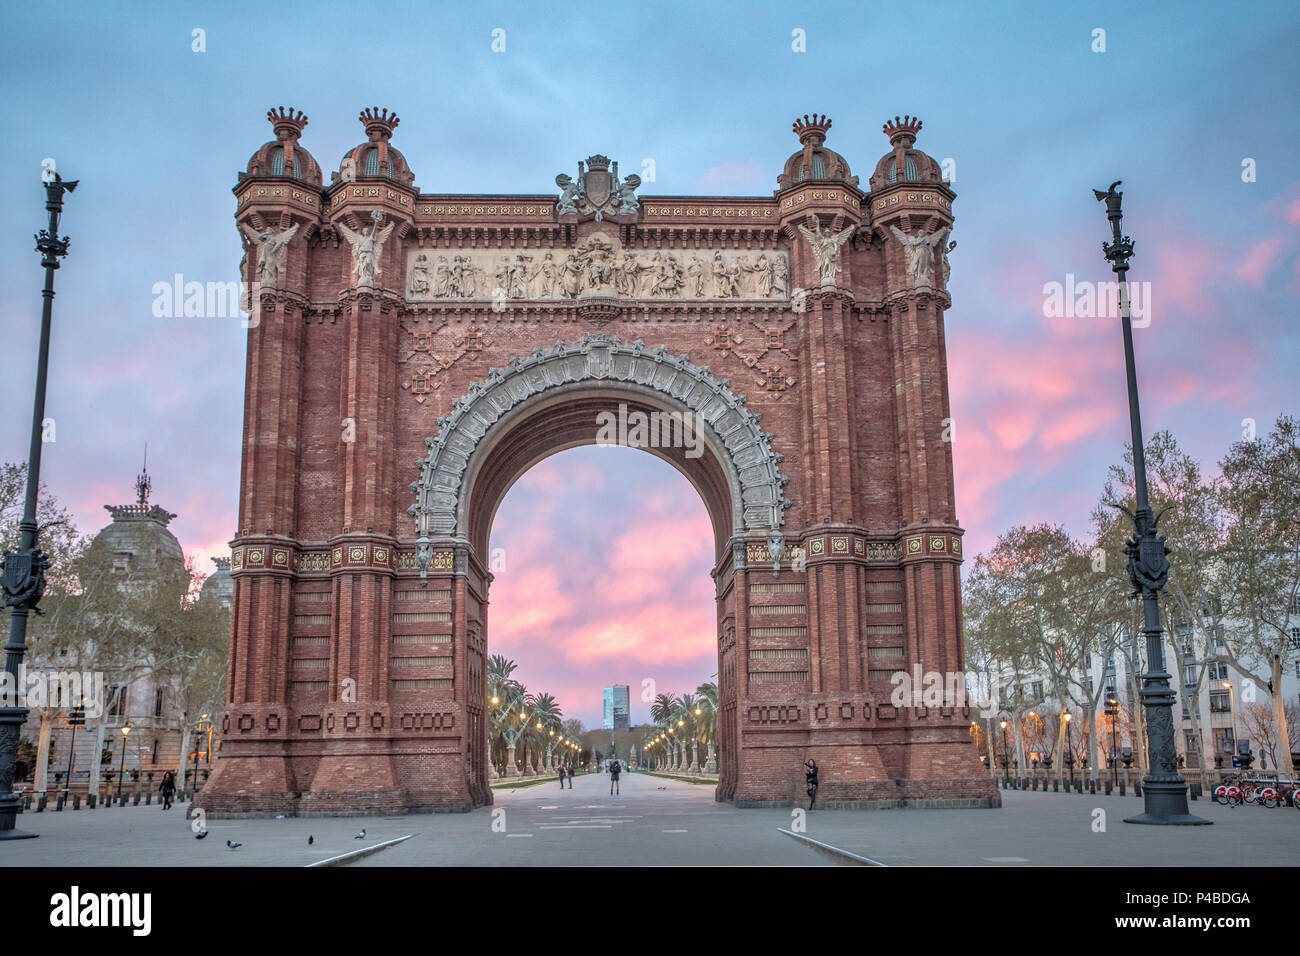 Arc de Triomf, arche, la ville de Barcelone, Espagne Banque D'Images